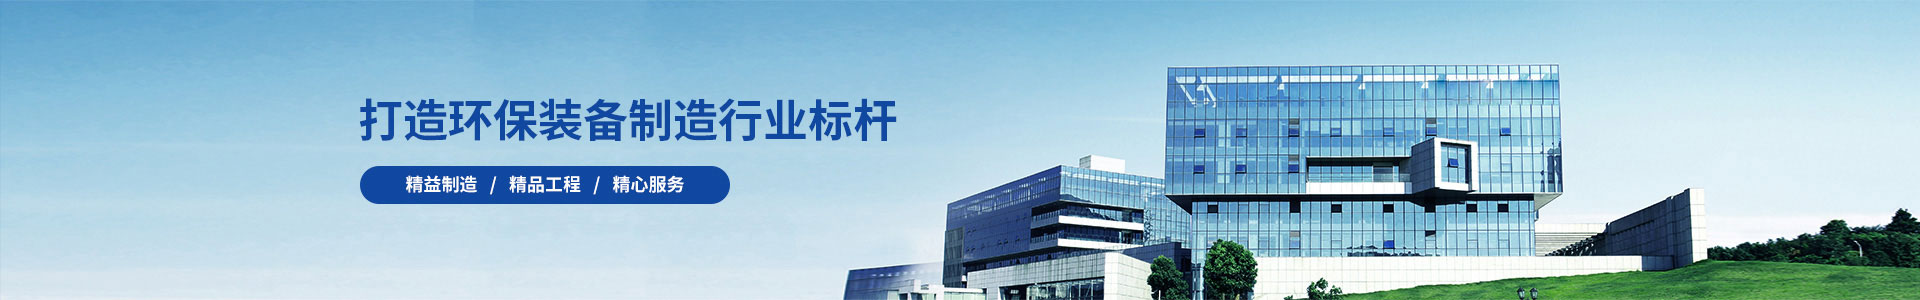 产品中心-广州锦如广告有限公司